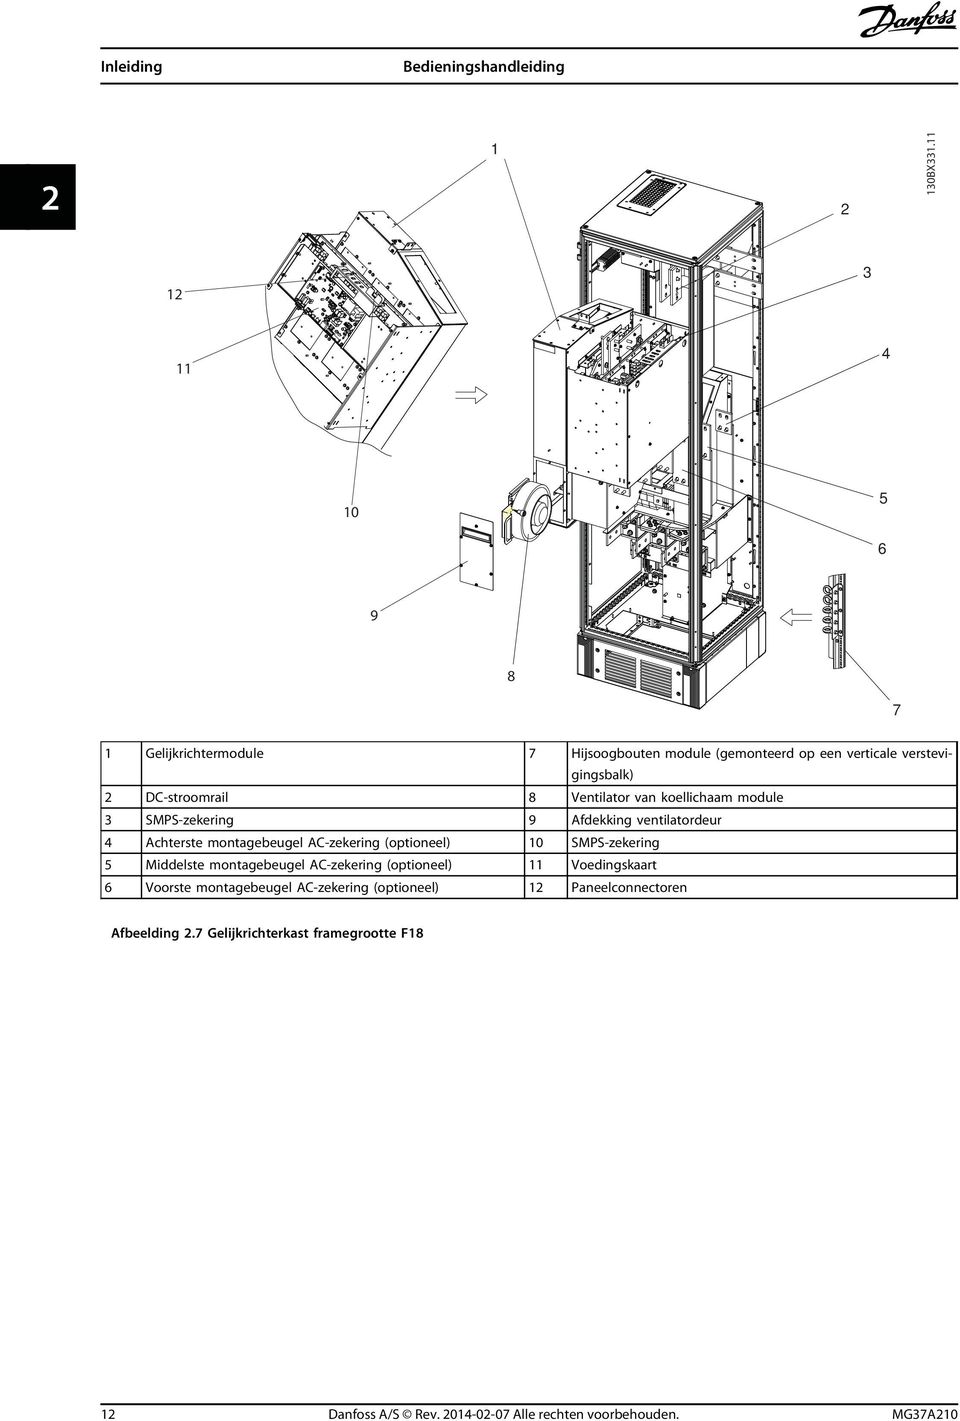 Ventilator van koellichaam module 3 SMPS-zekering 9 Afdekking ventilatordeur 4 Achterste montagebeugel AC-zekering (optioneel) 10